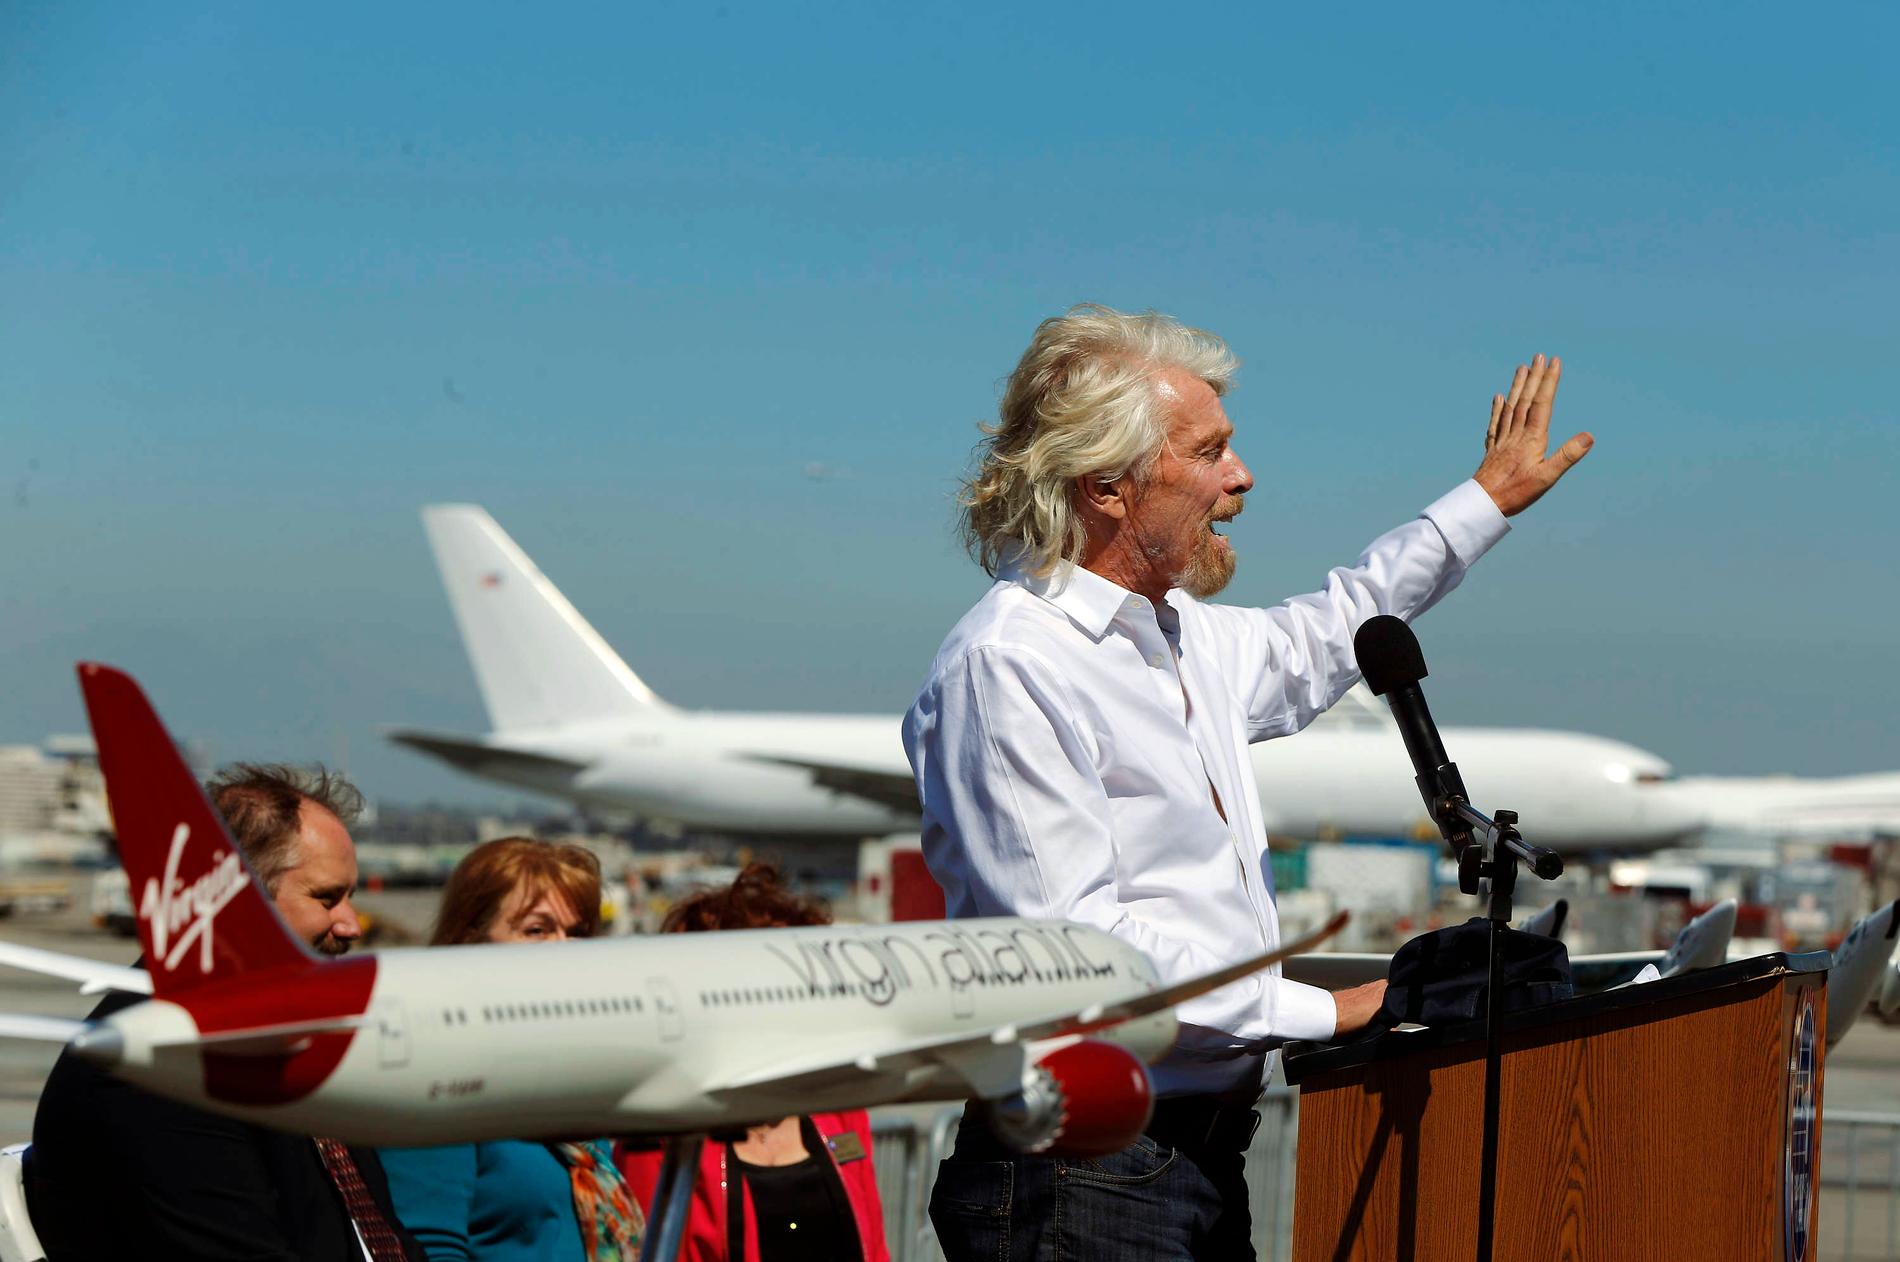 Richard Branson och hans Virgin Galactic säger sig kunna skicka upp turister i rymden mycket snart.